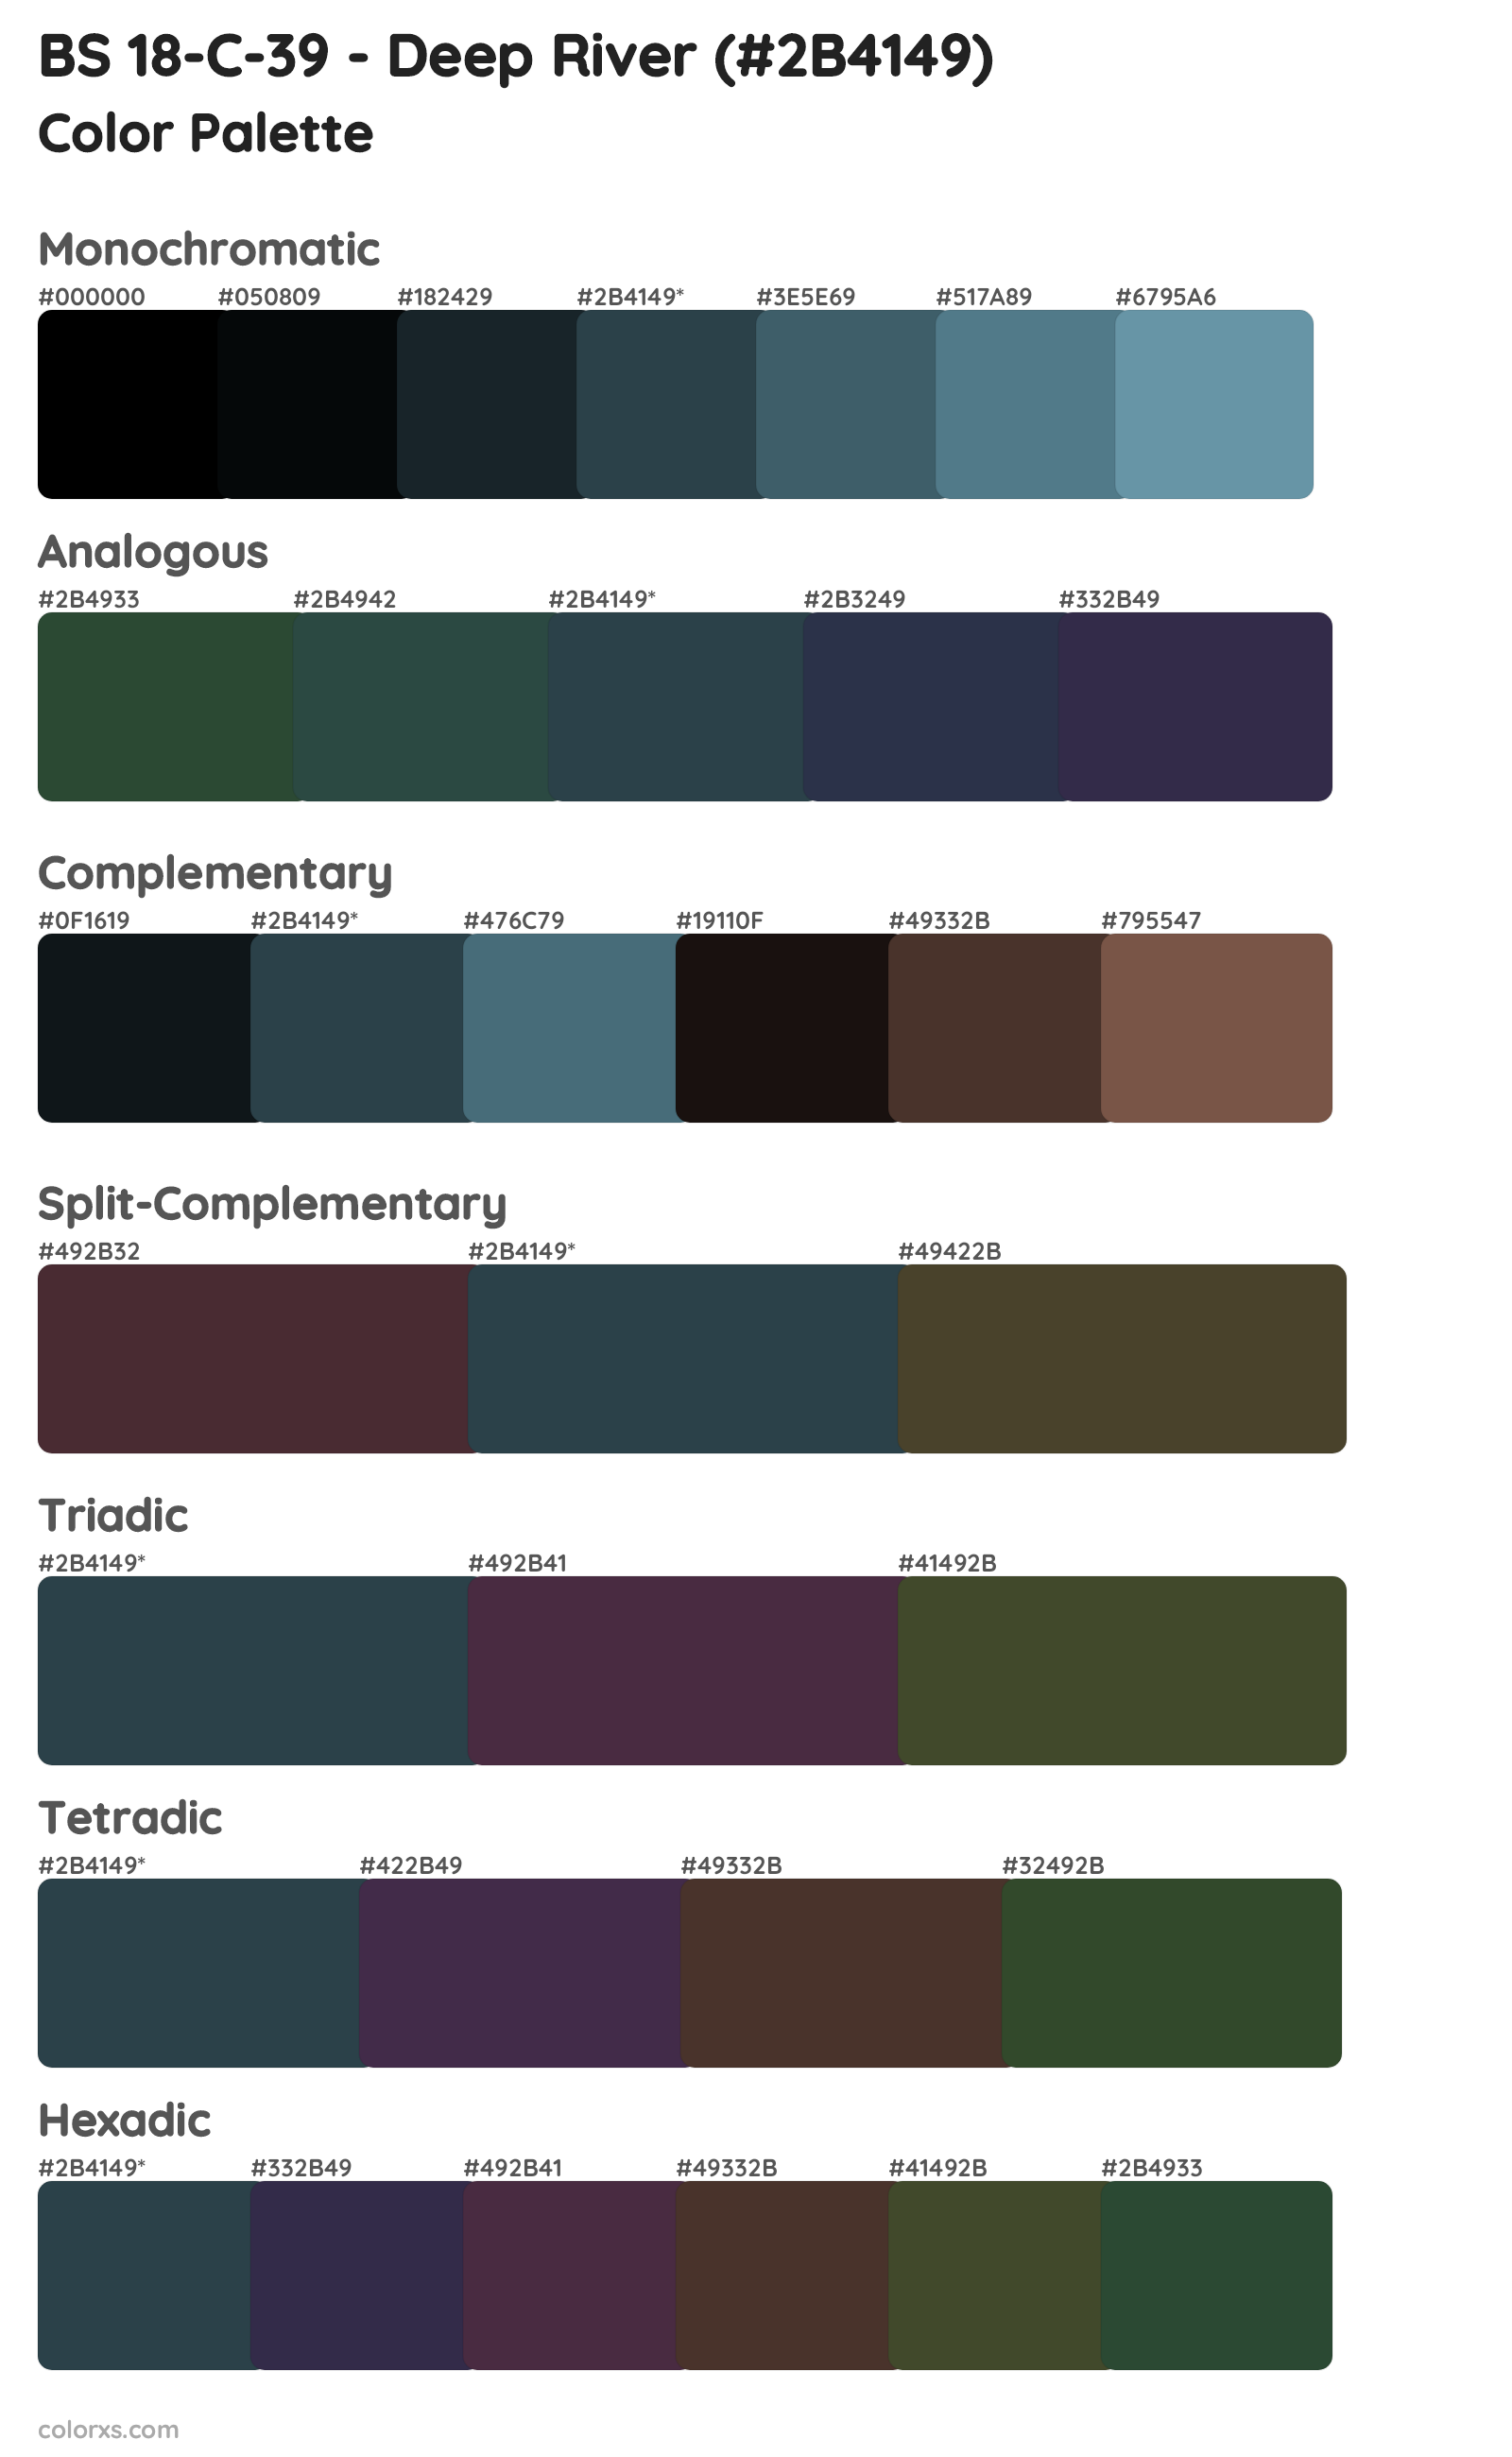 BS 18-C-39 - Deep River Color Scheme Palettes